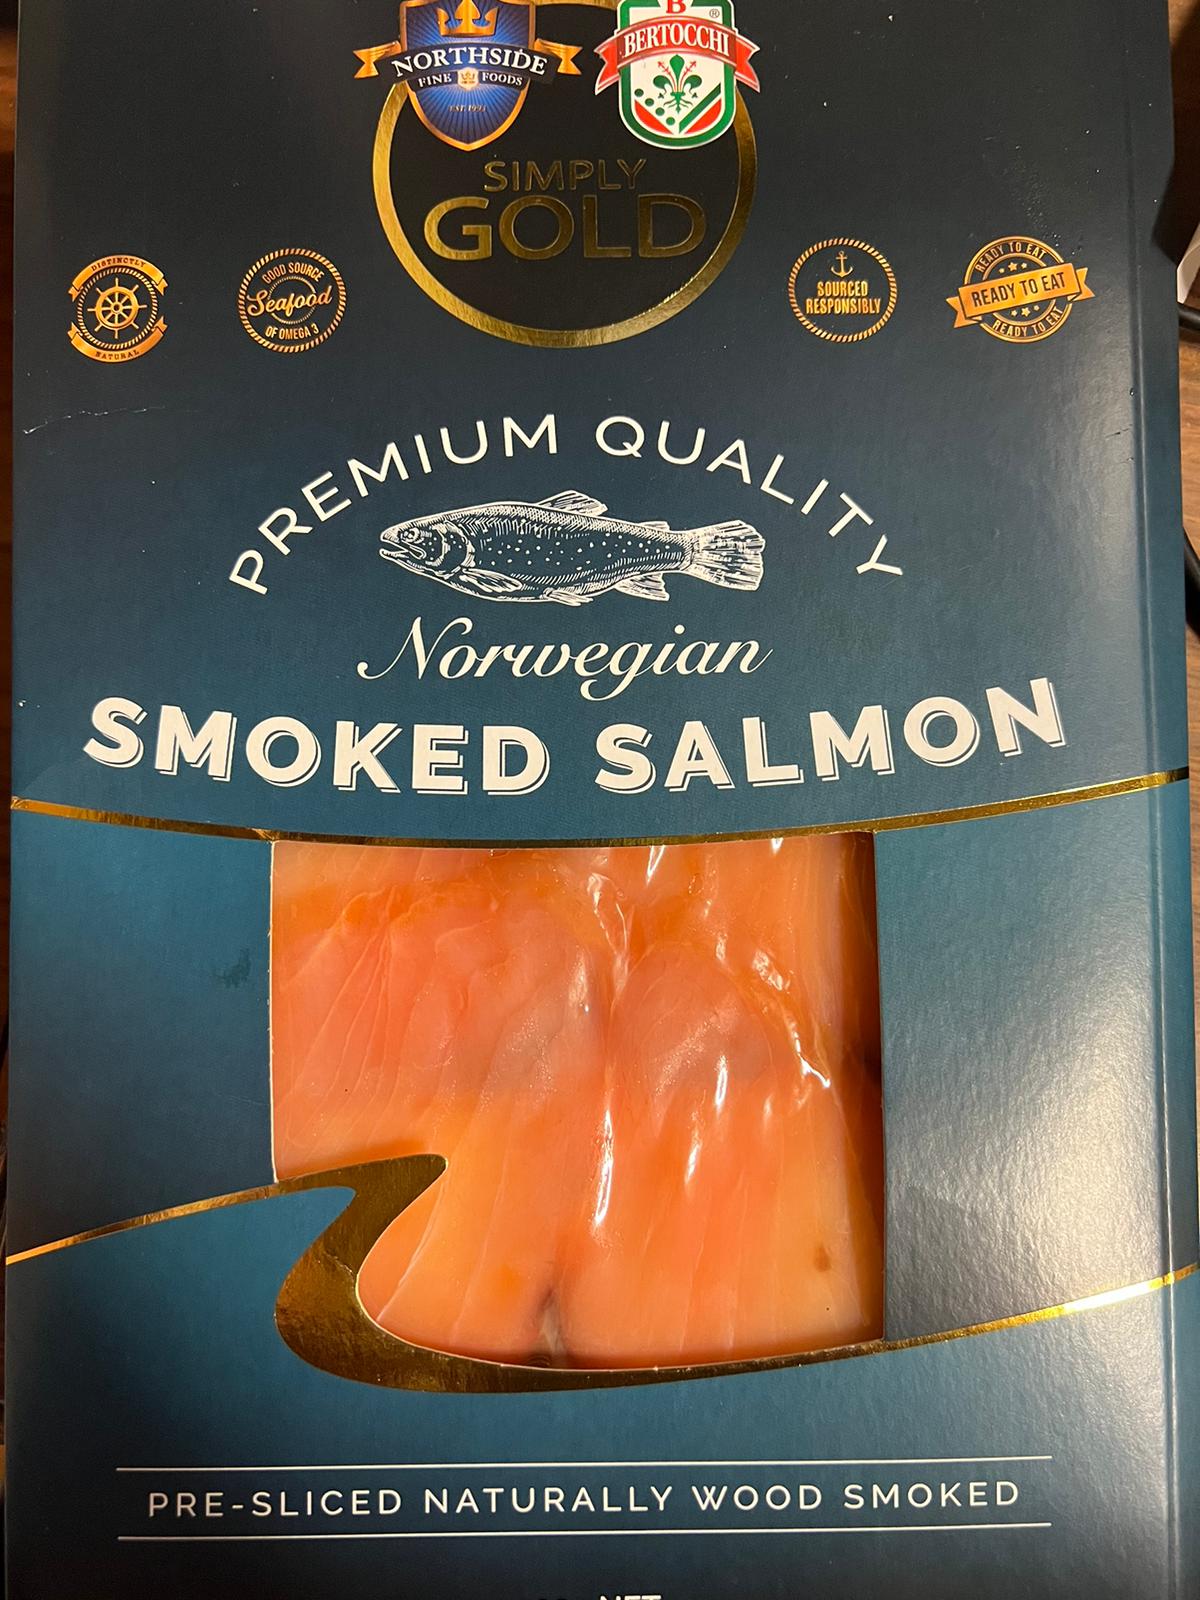 Bertochi Smoked Salmon